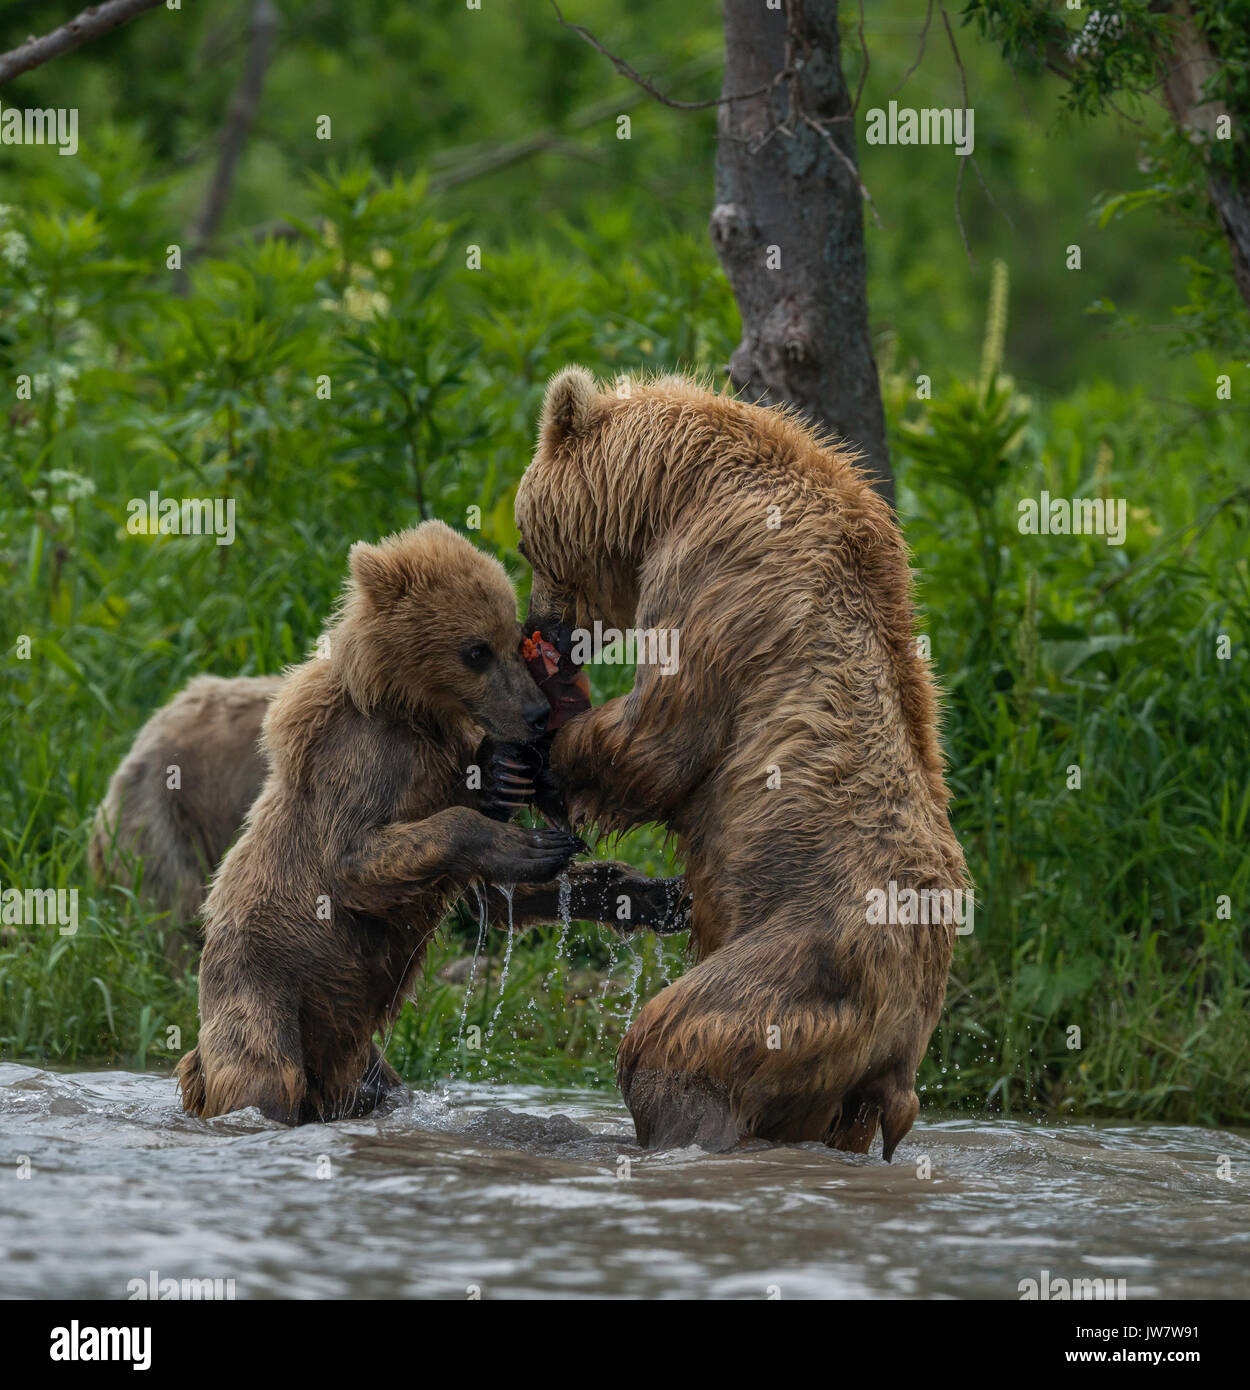 Brown Bear cub essaie de juguler le saumon de la mère. Image a été prise dans le cours d'eau se déversant dans le lac Kuril, du Kamtchatka, en Russie. Banque D'Images